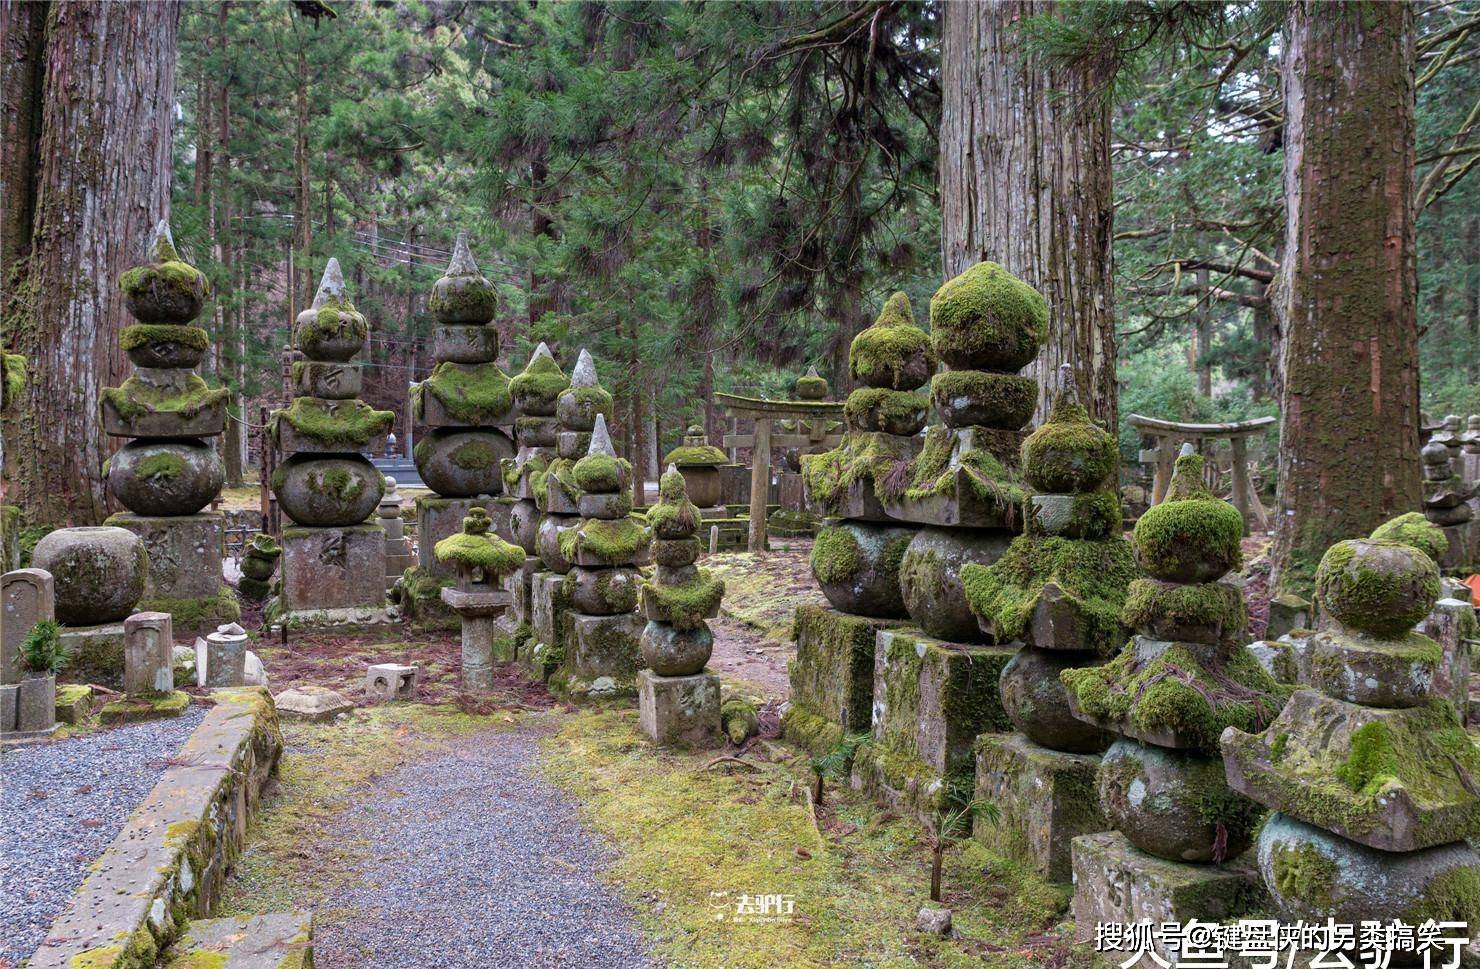 日本公墓里的可爱石像:戴着帽子穿着兜裙,背后却令人心碎